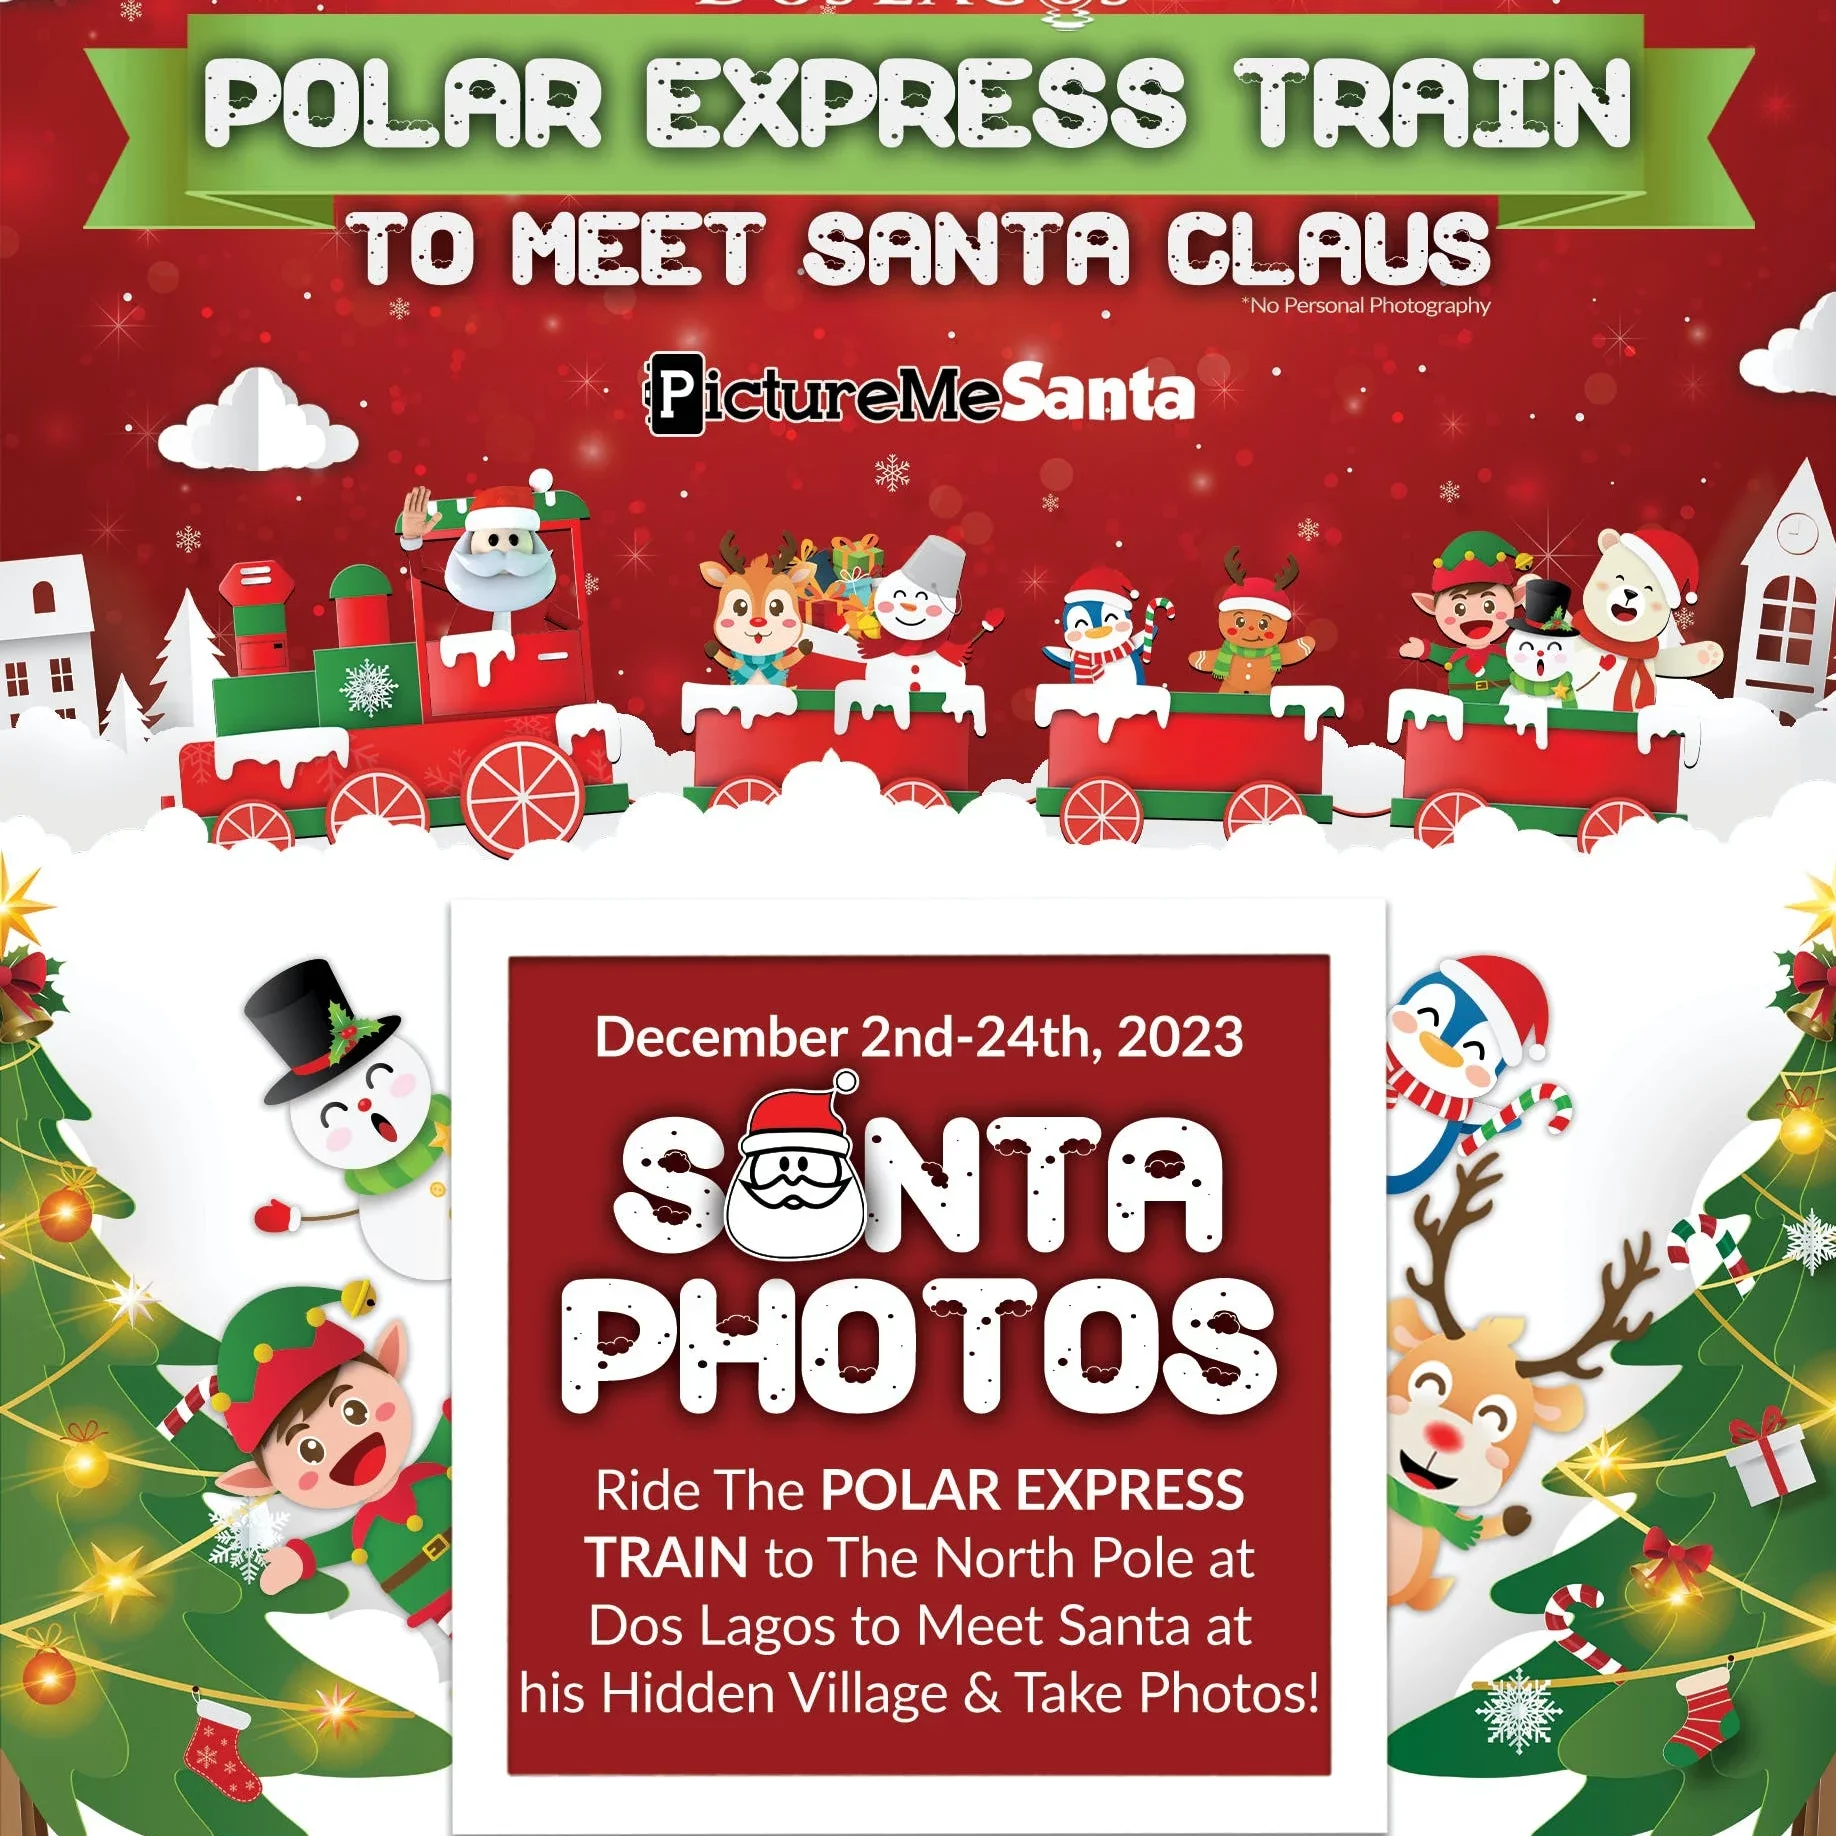 Polar Express Train to Meet Santa Claus